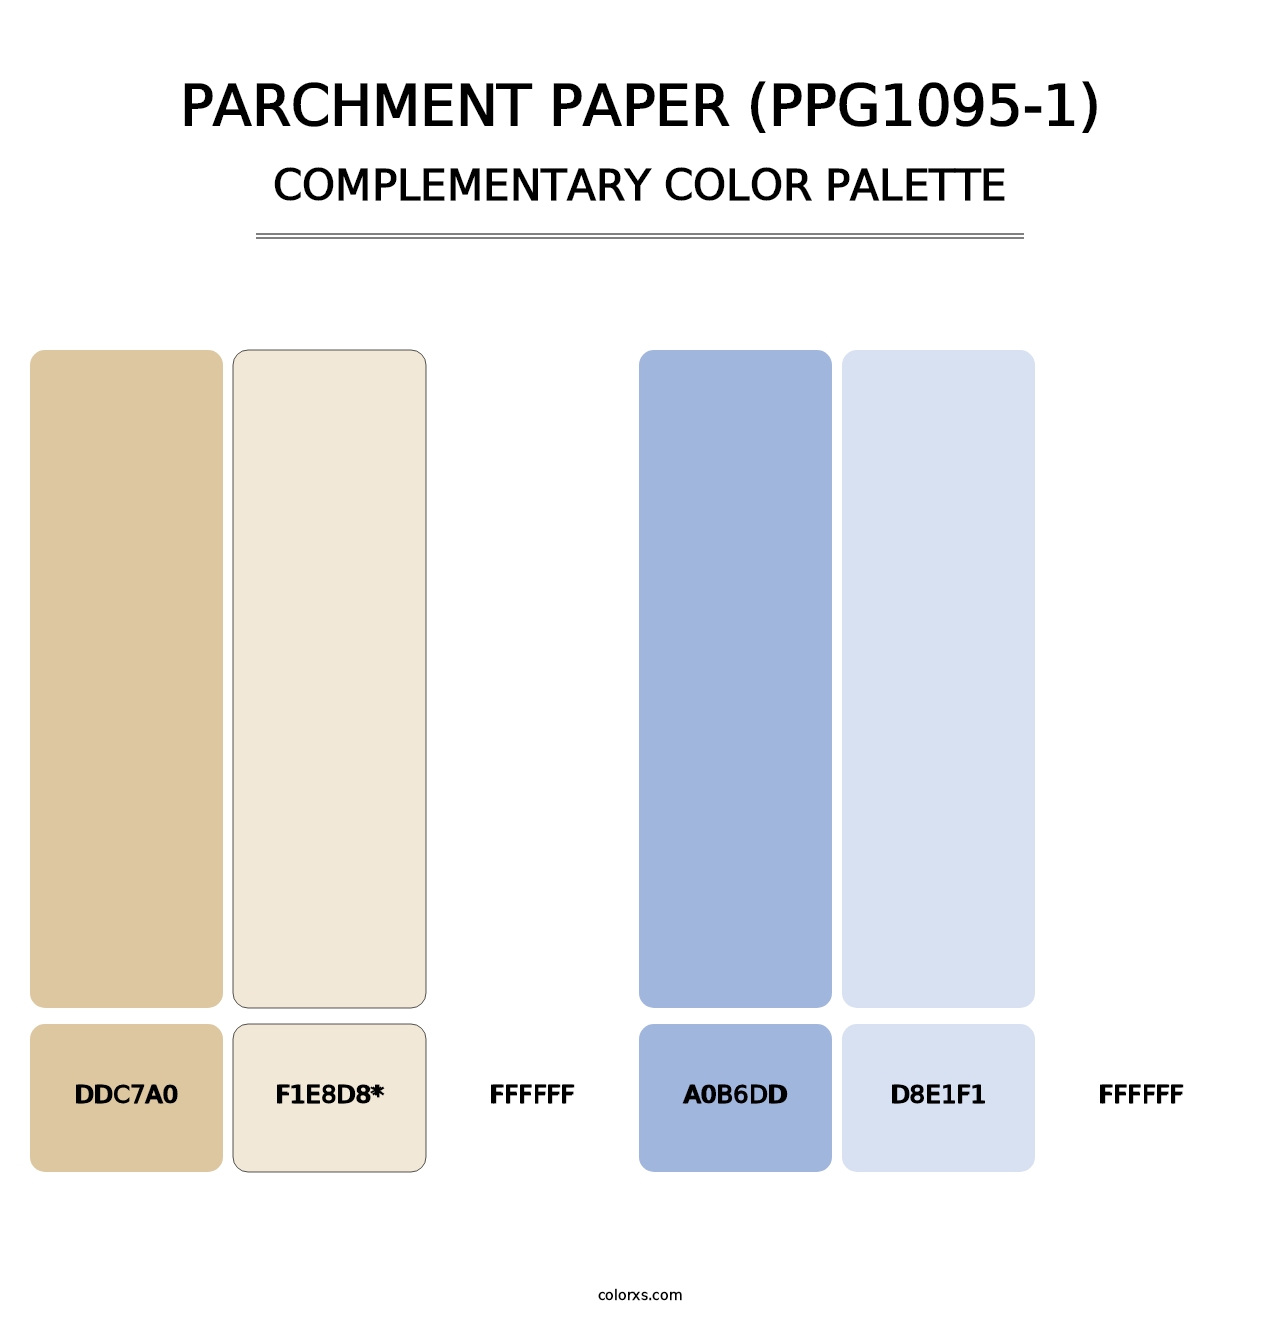 Parchment Paper (PPG1095-1) - Complementary Color Palette